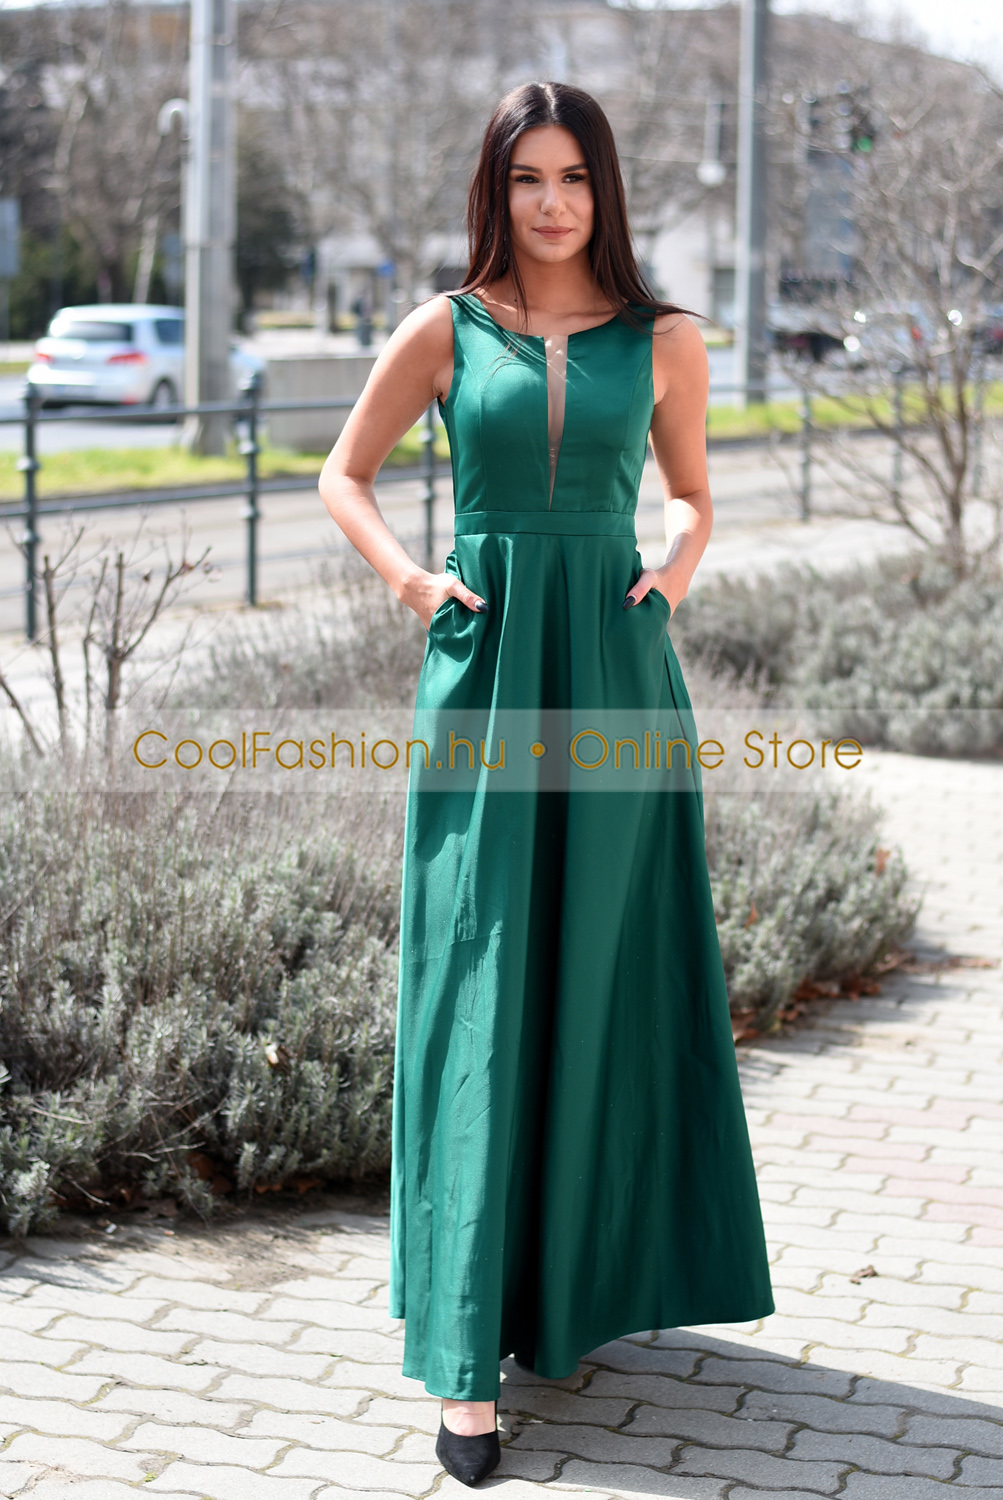 Stella smaragdzöld szatén maxi ruha